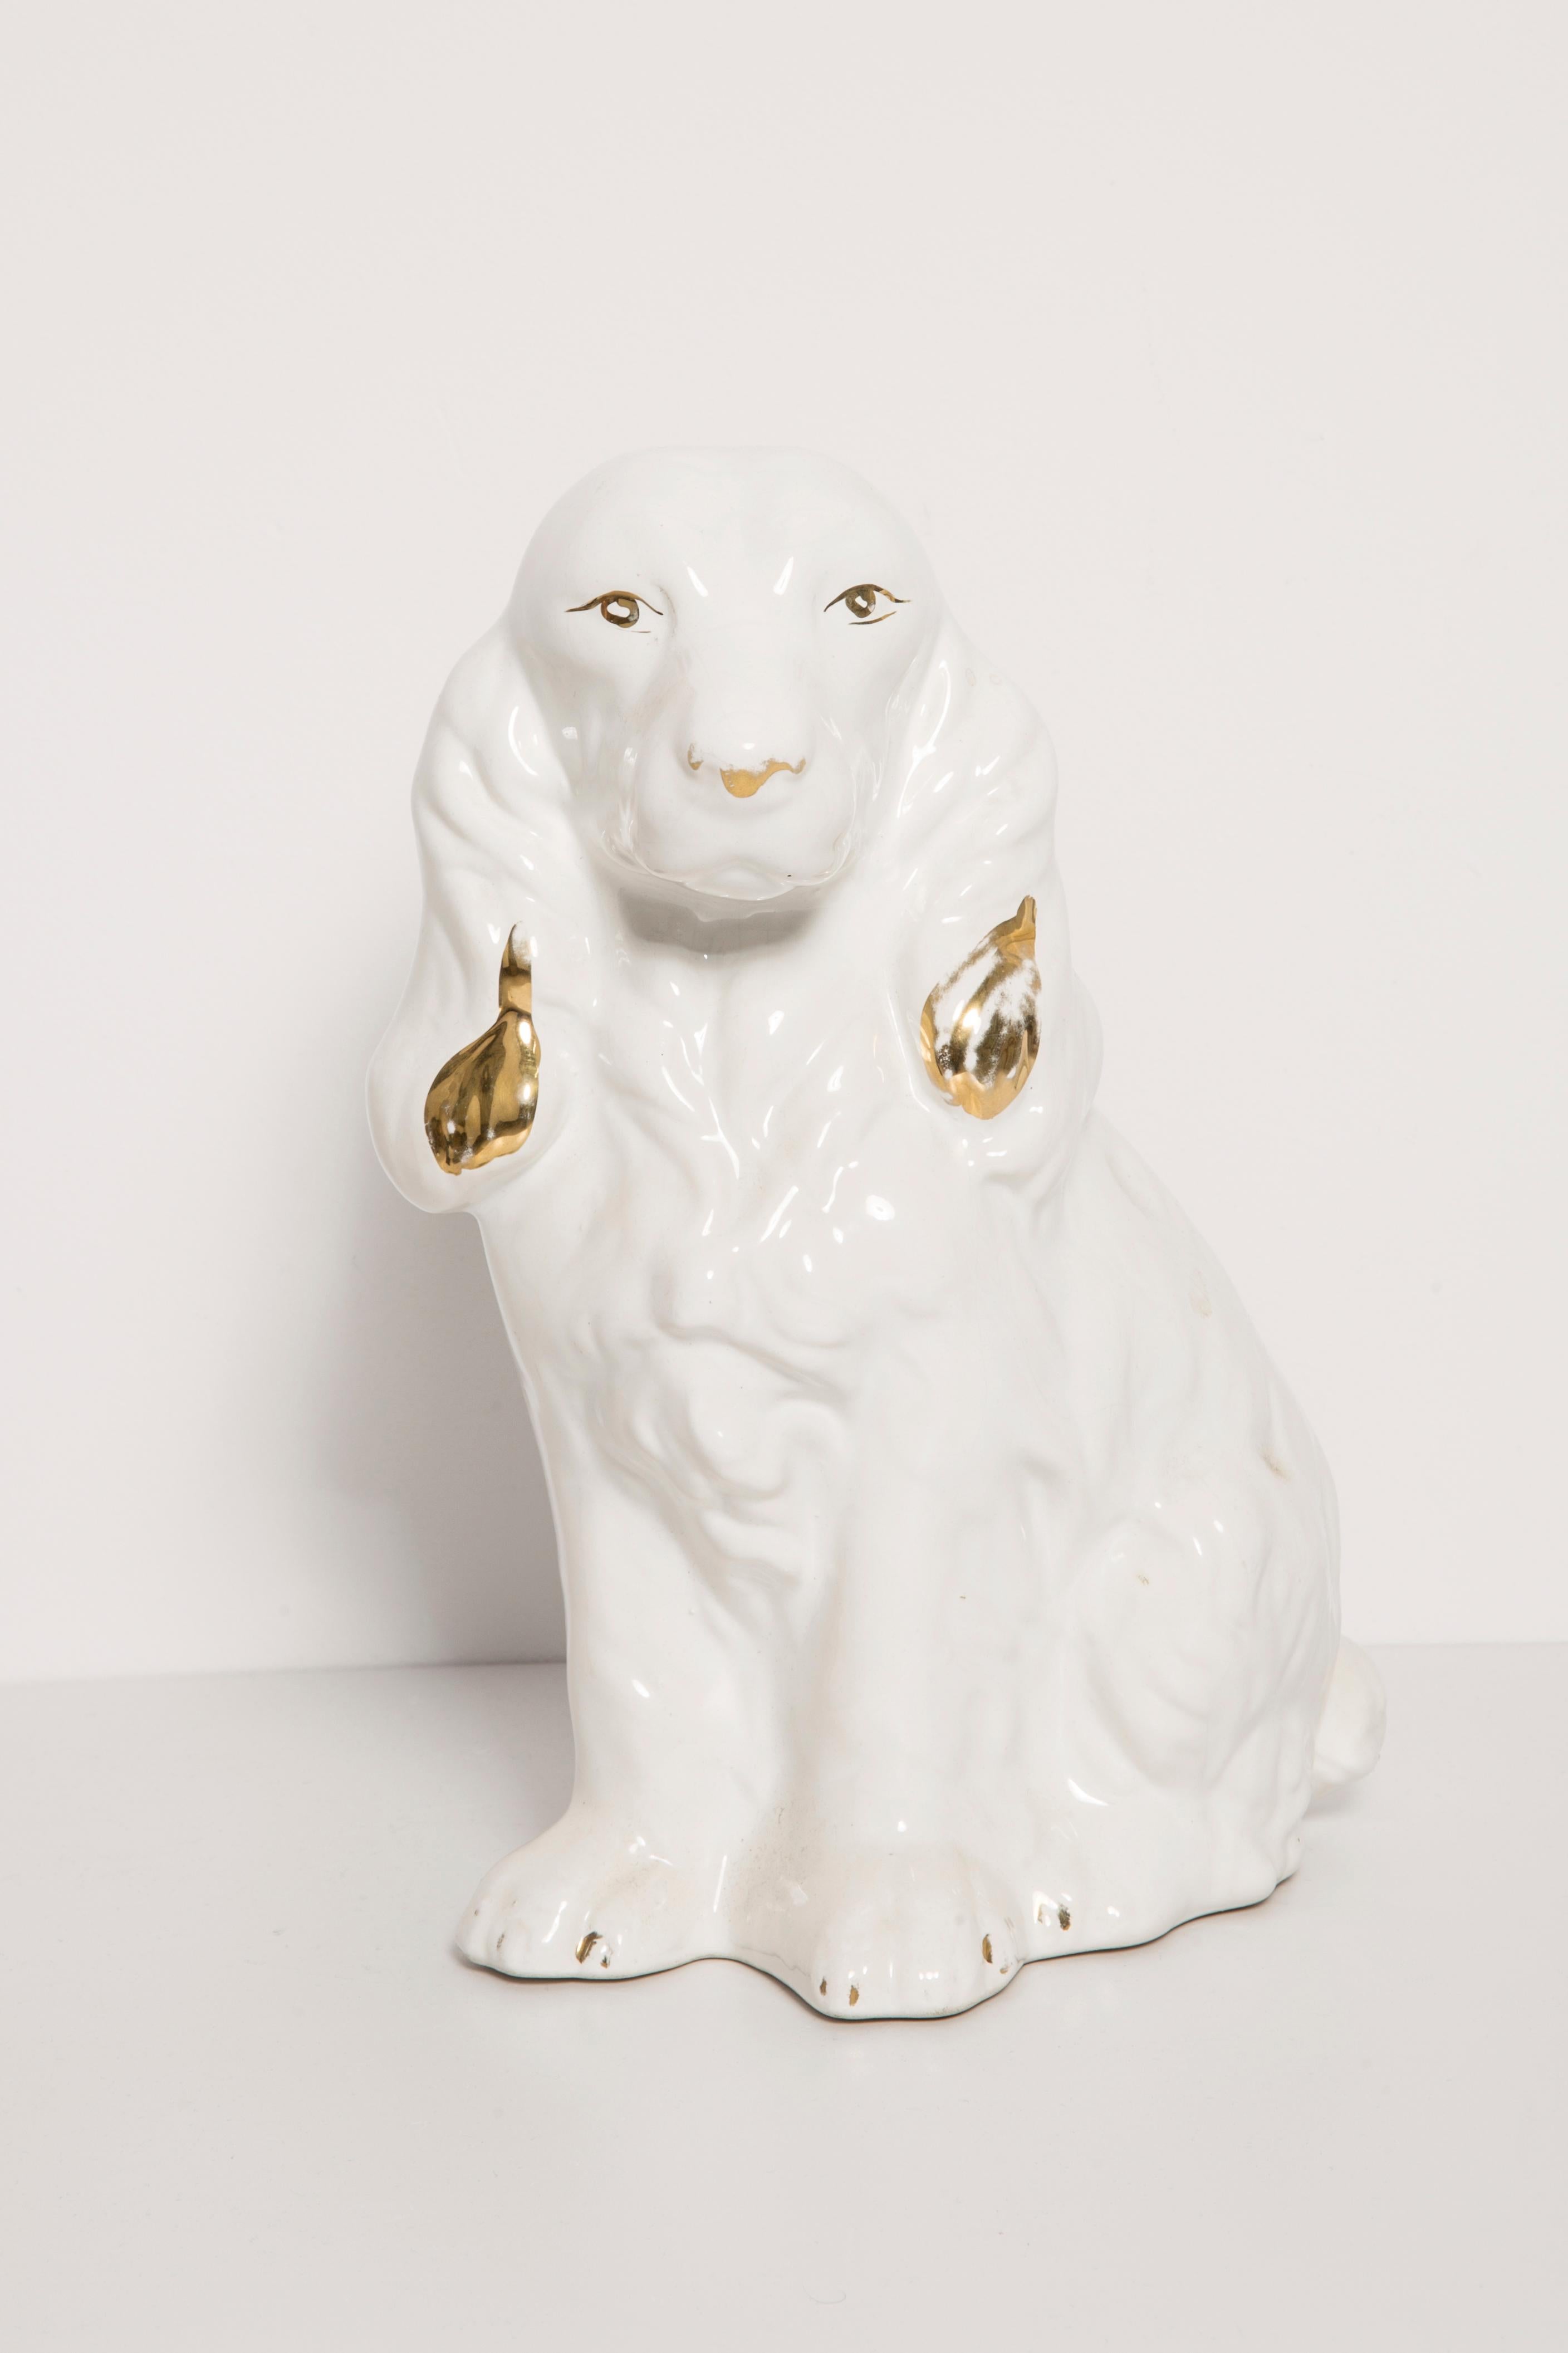 Céramique peinte/terracotta, bon état d'origine vintage. Une sculpture décorative magnifique et unique. Le chien Spaniel a été produit dans les années 1960 en Italie.